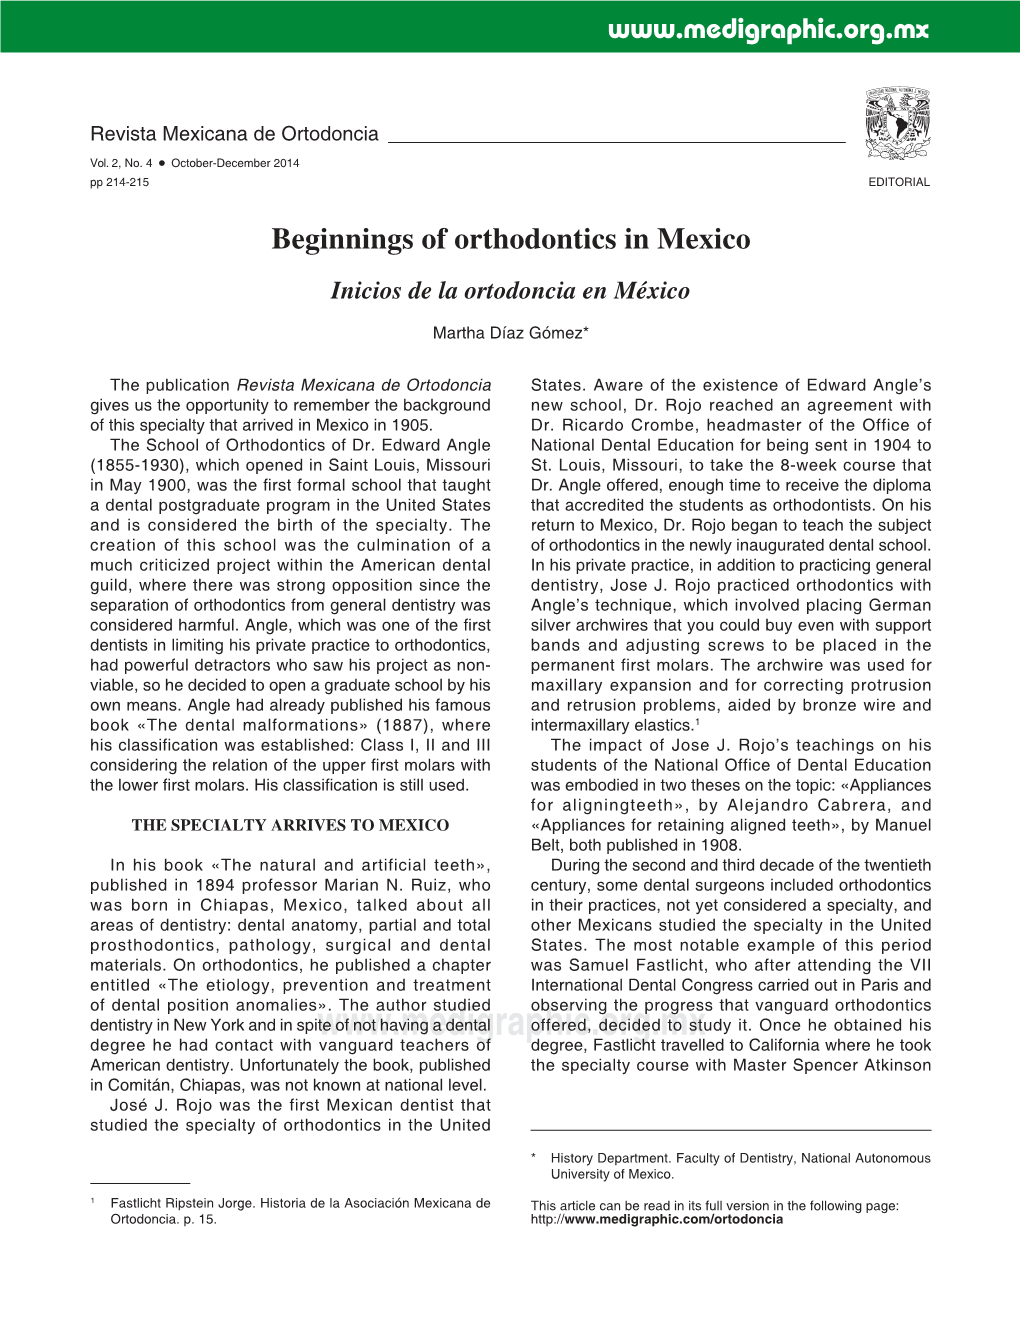 Beginnings of Orthodontics in Mexico Inicios De La Ortodoncia En México